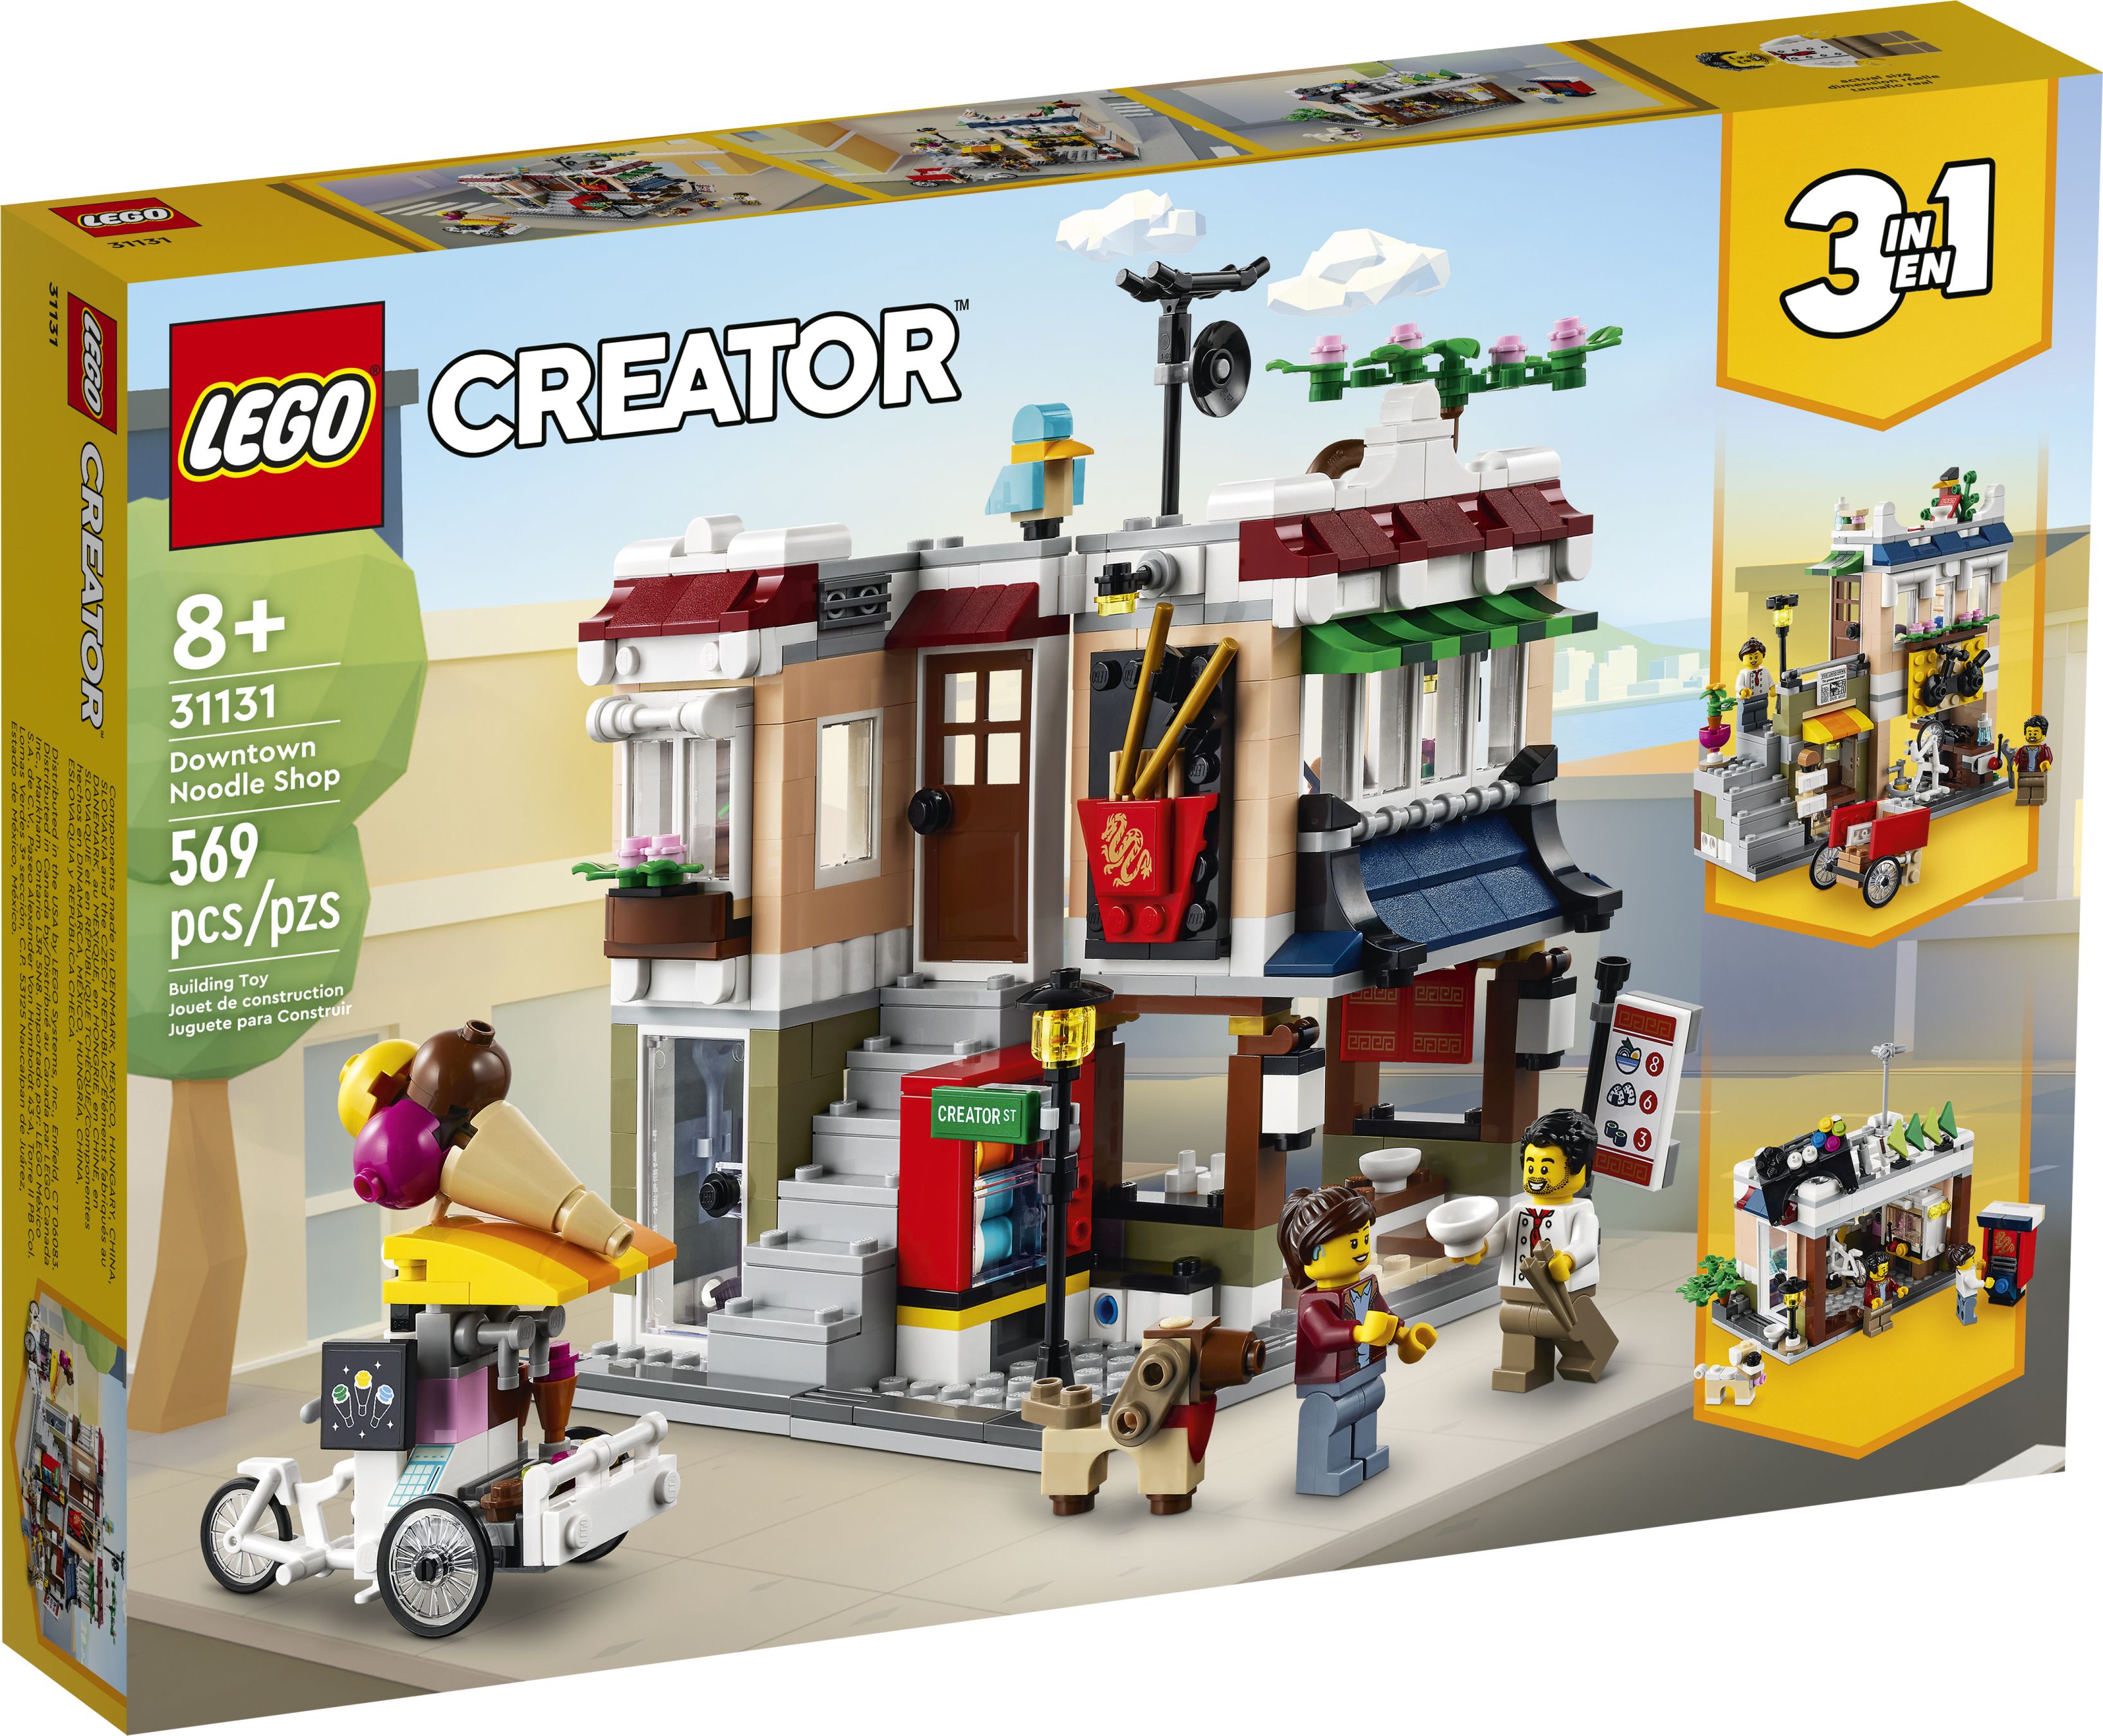 LEGO Creator 31131 Nudelladen LEGO_31131_Box1_v39.jpg